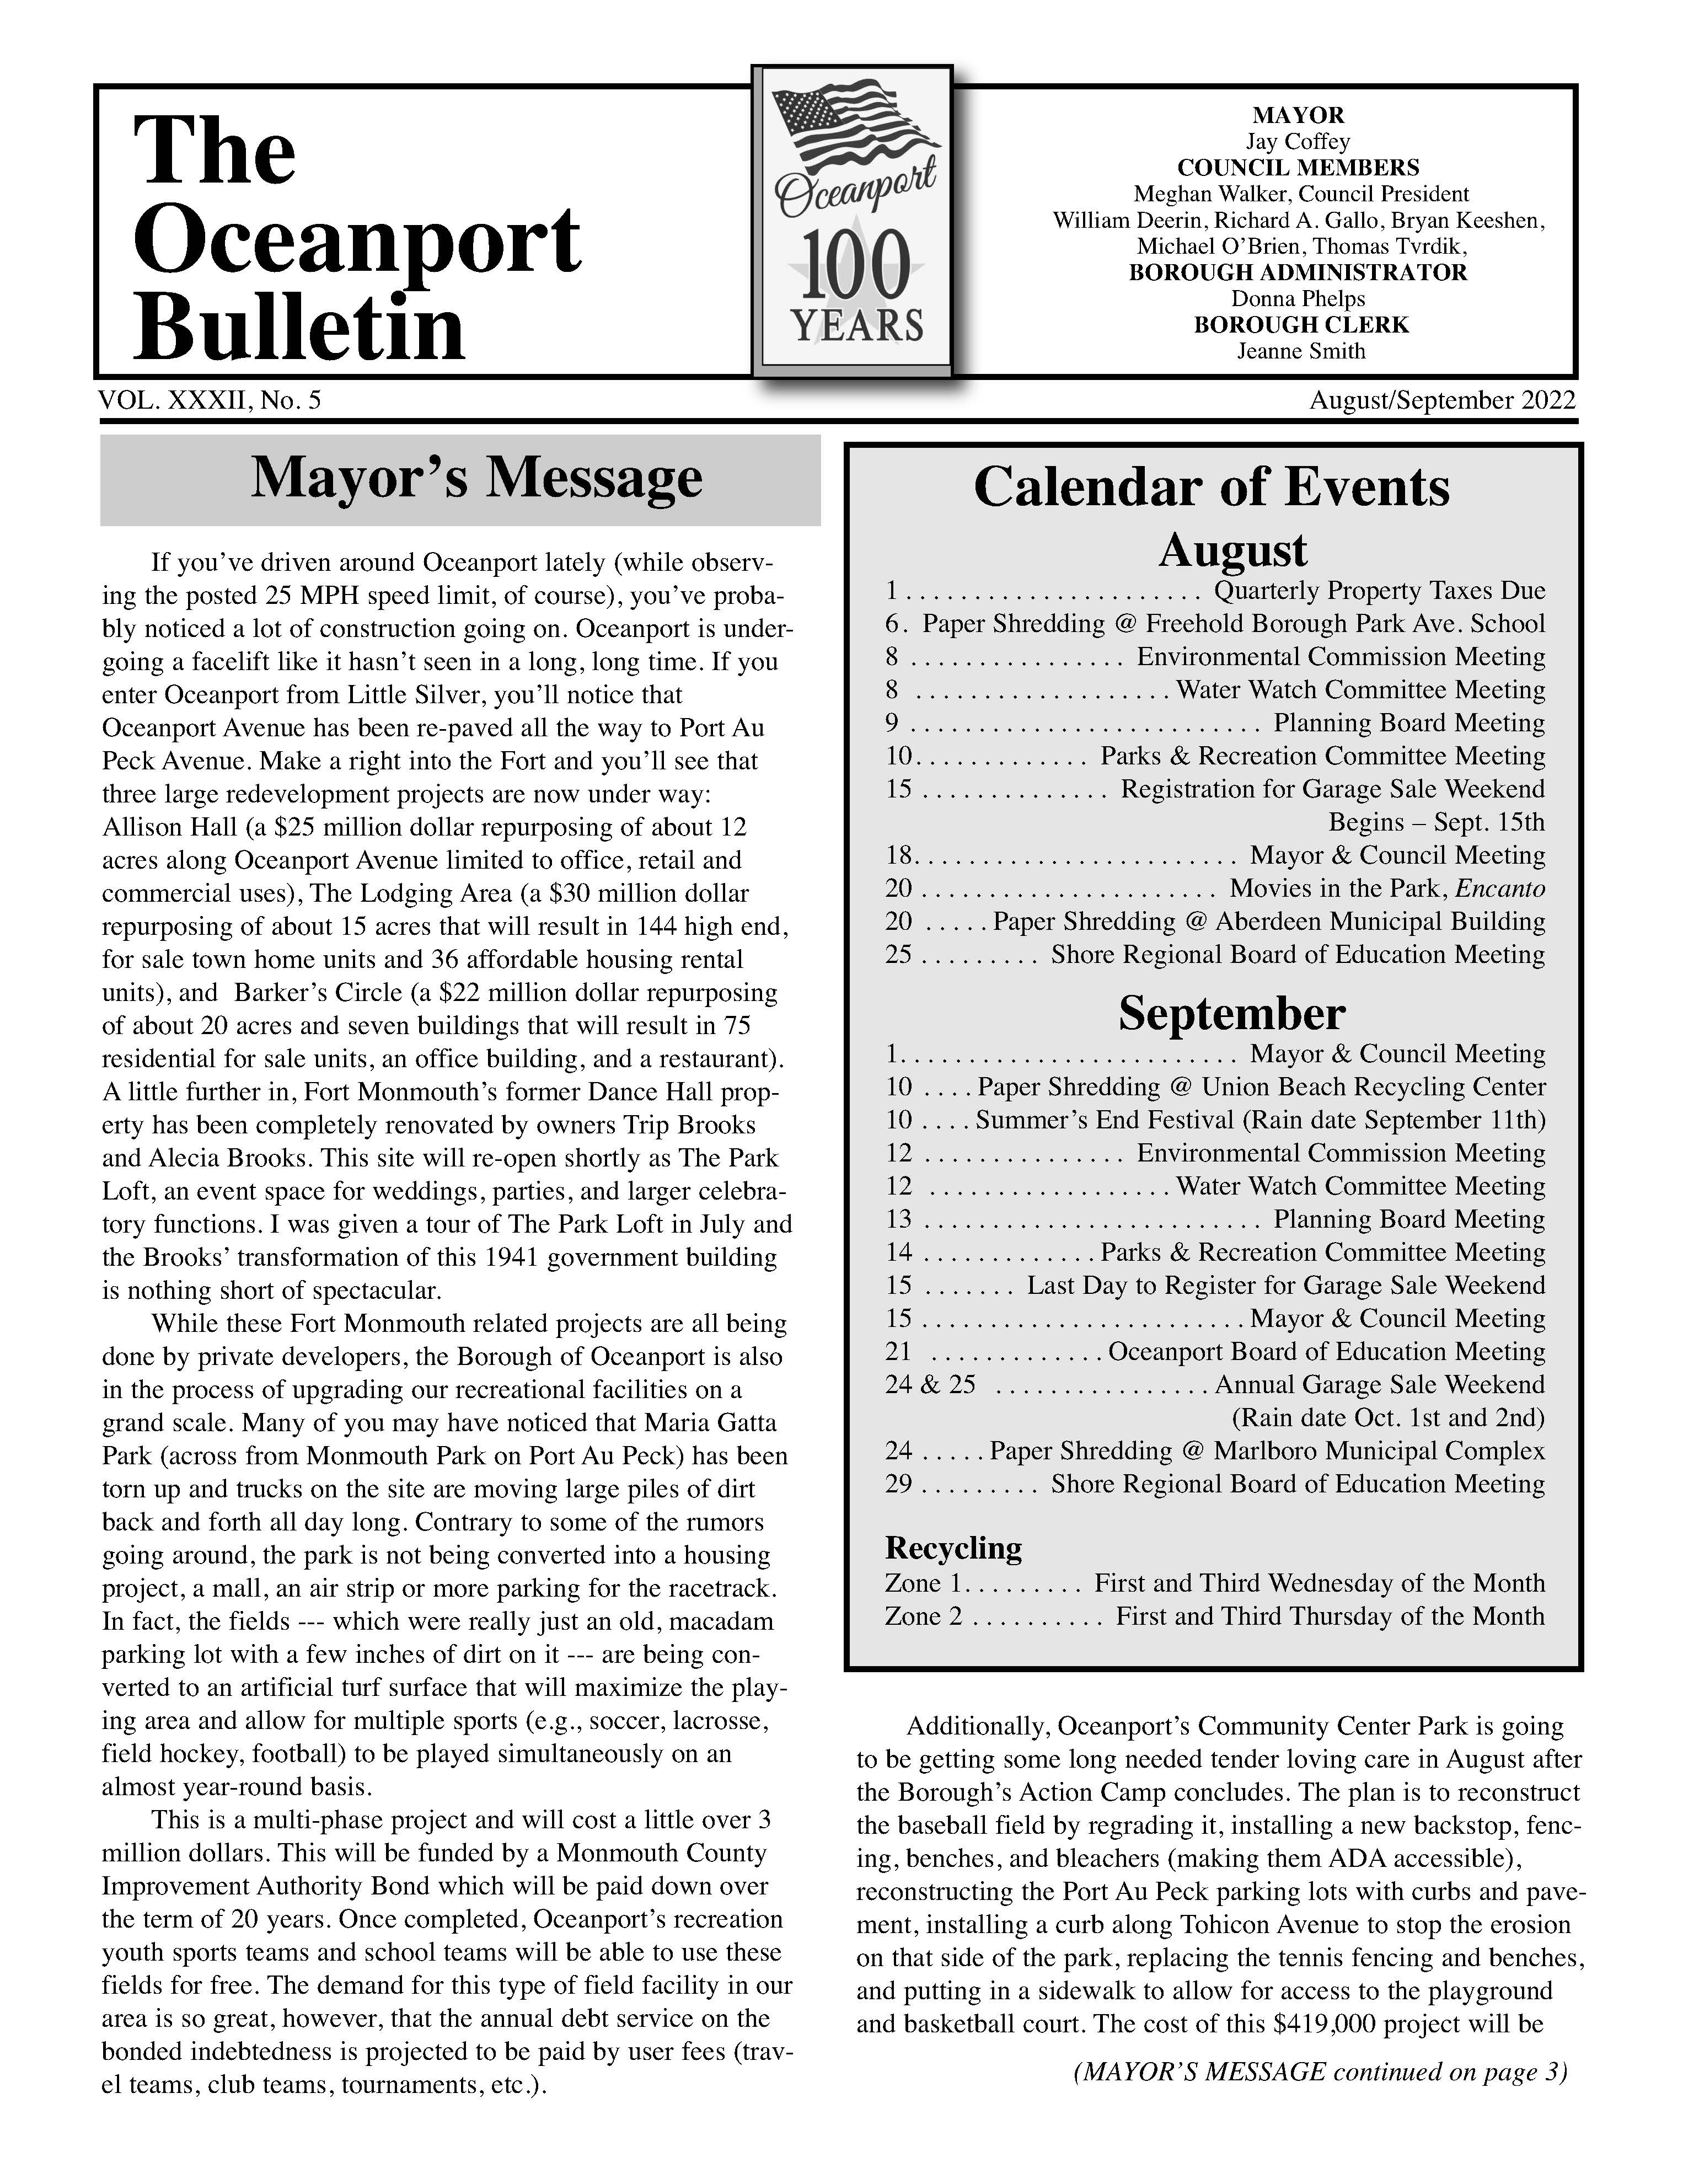 2022 Aug/Sept Bulletin Newsletter